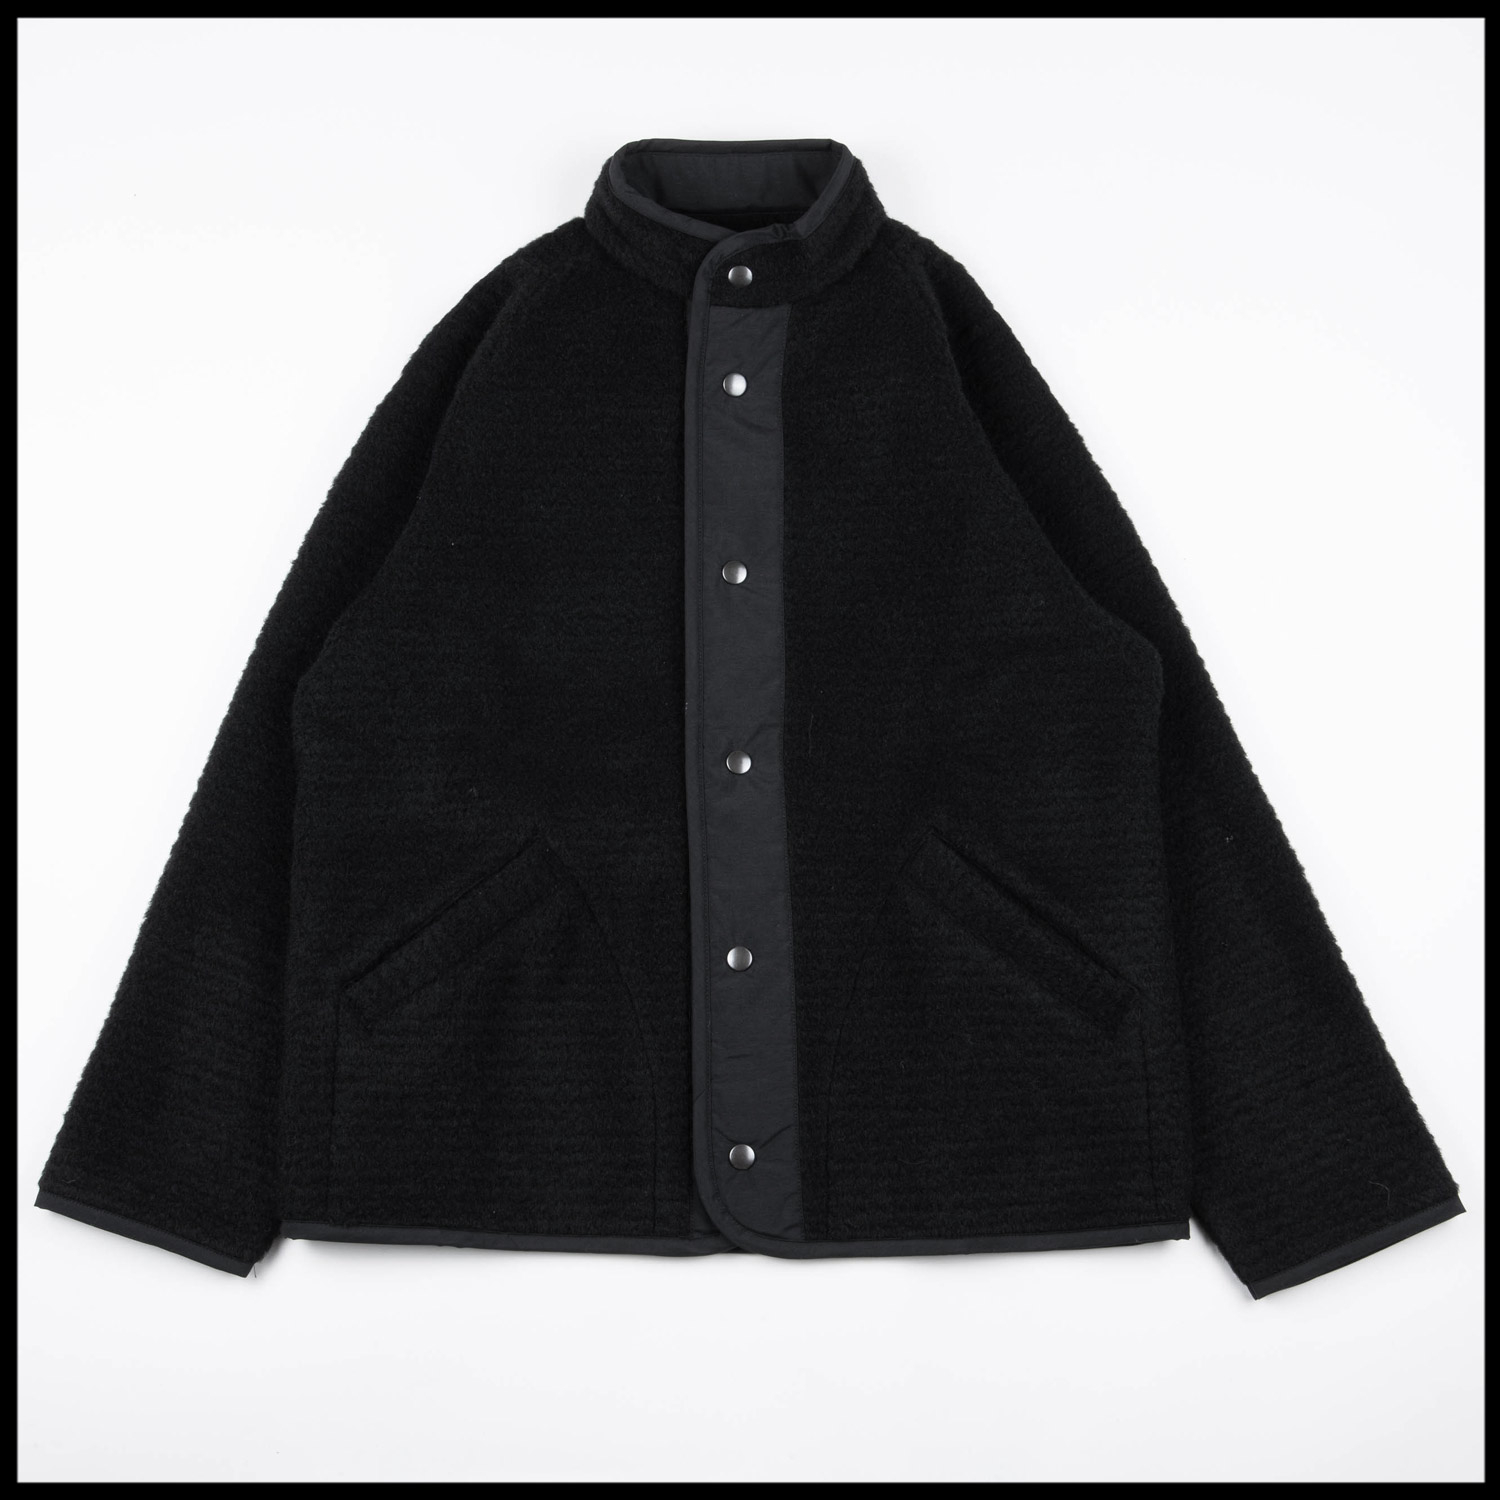 CONTOUR W Jacket in Black color by Arpenteur Women's